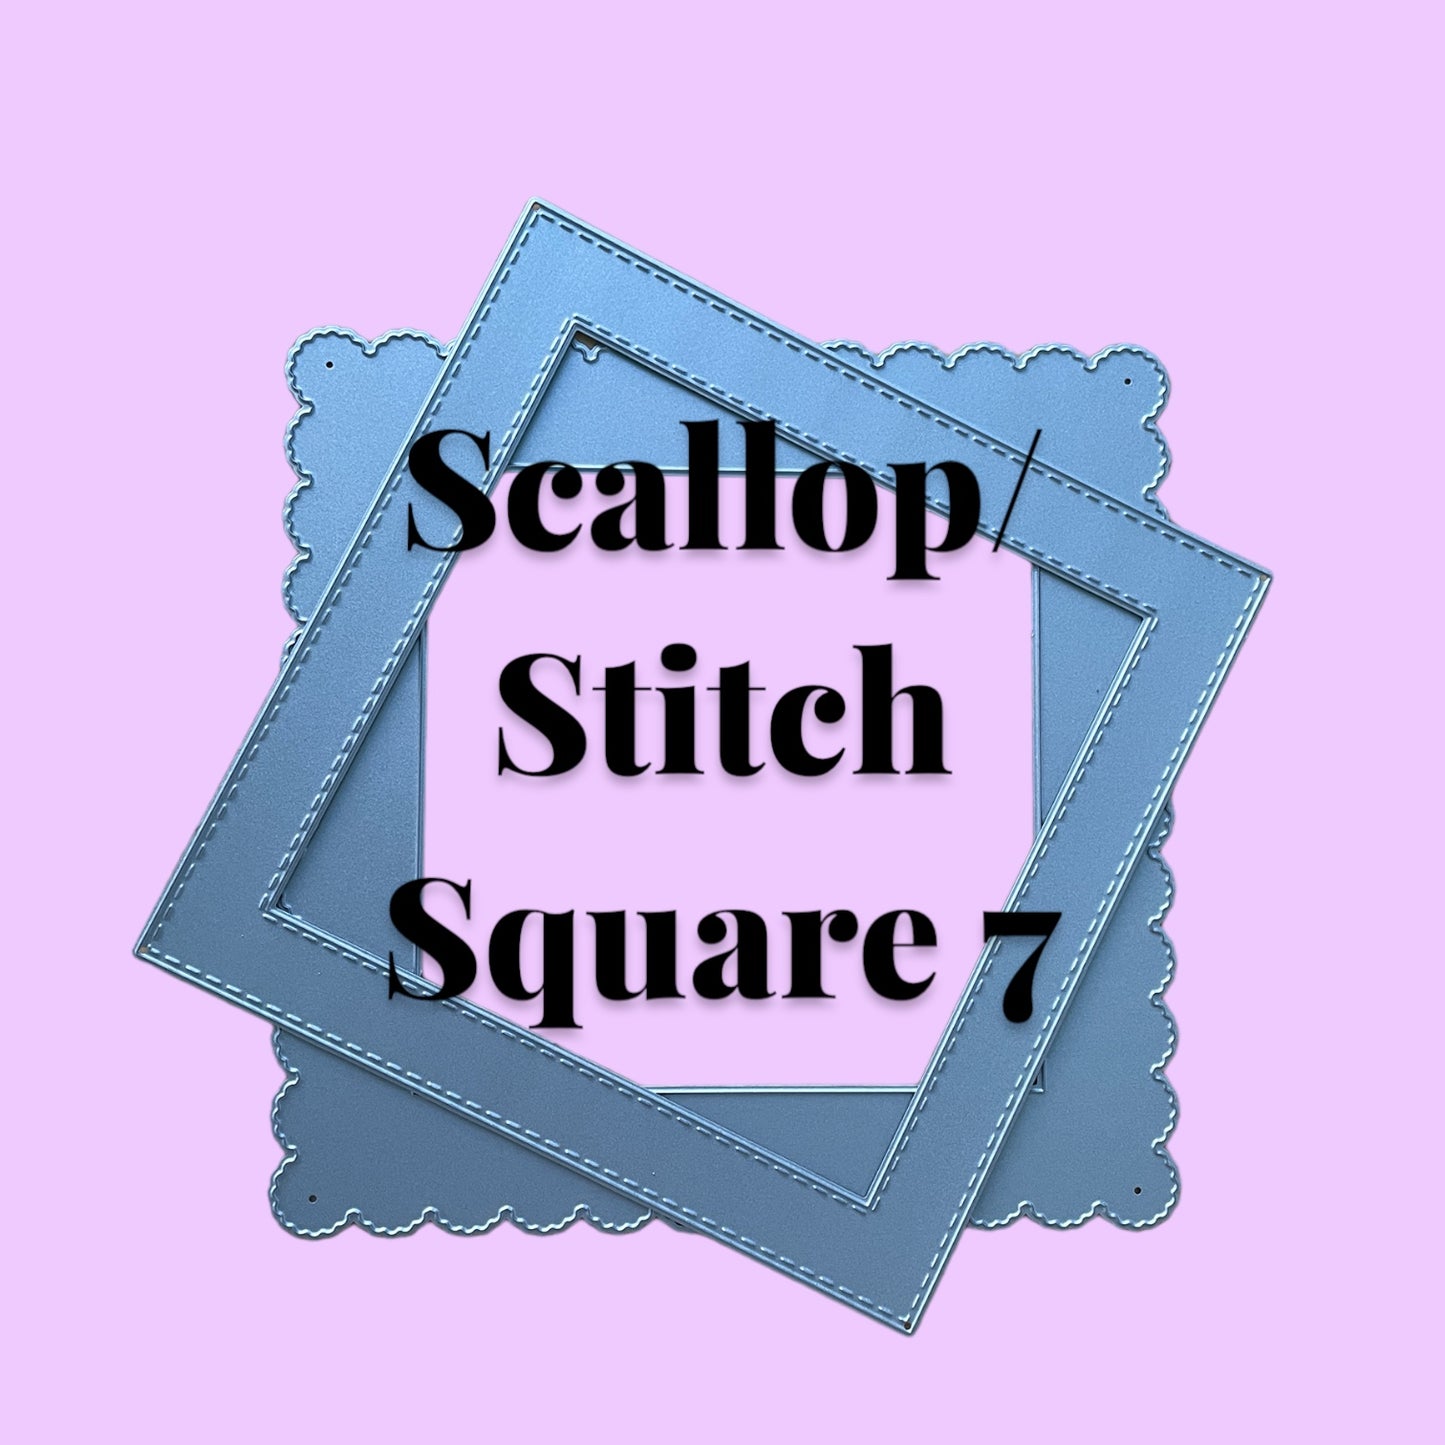 Maximumcrafts Scallop/Stitch Square 7 EasyFrames